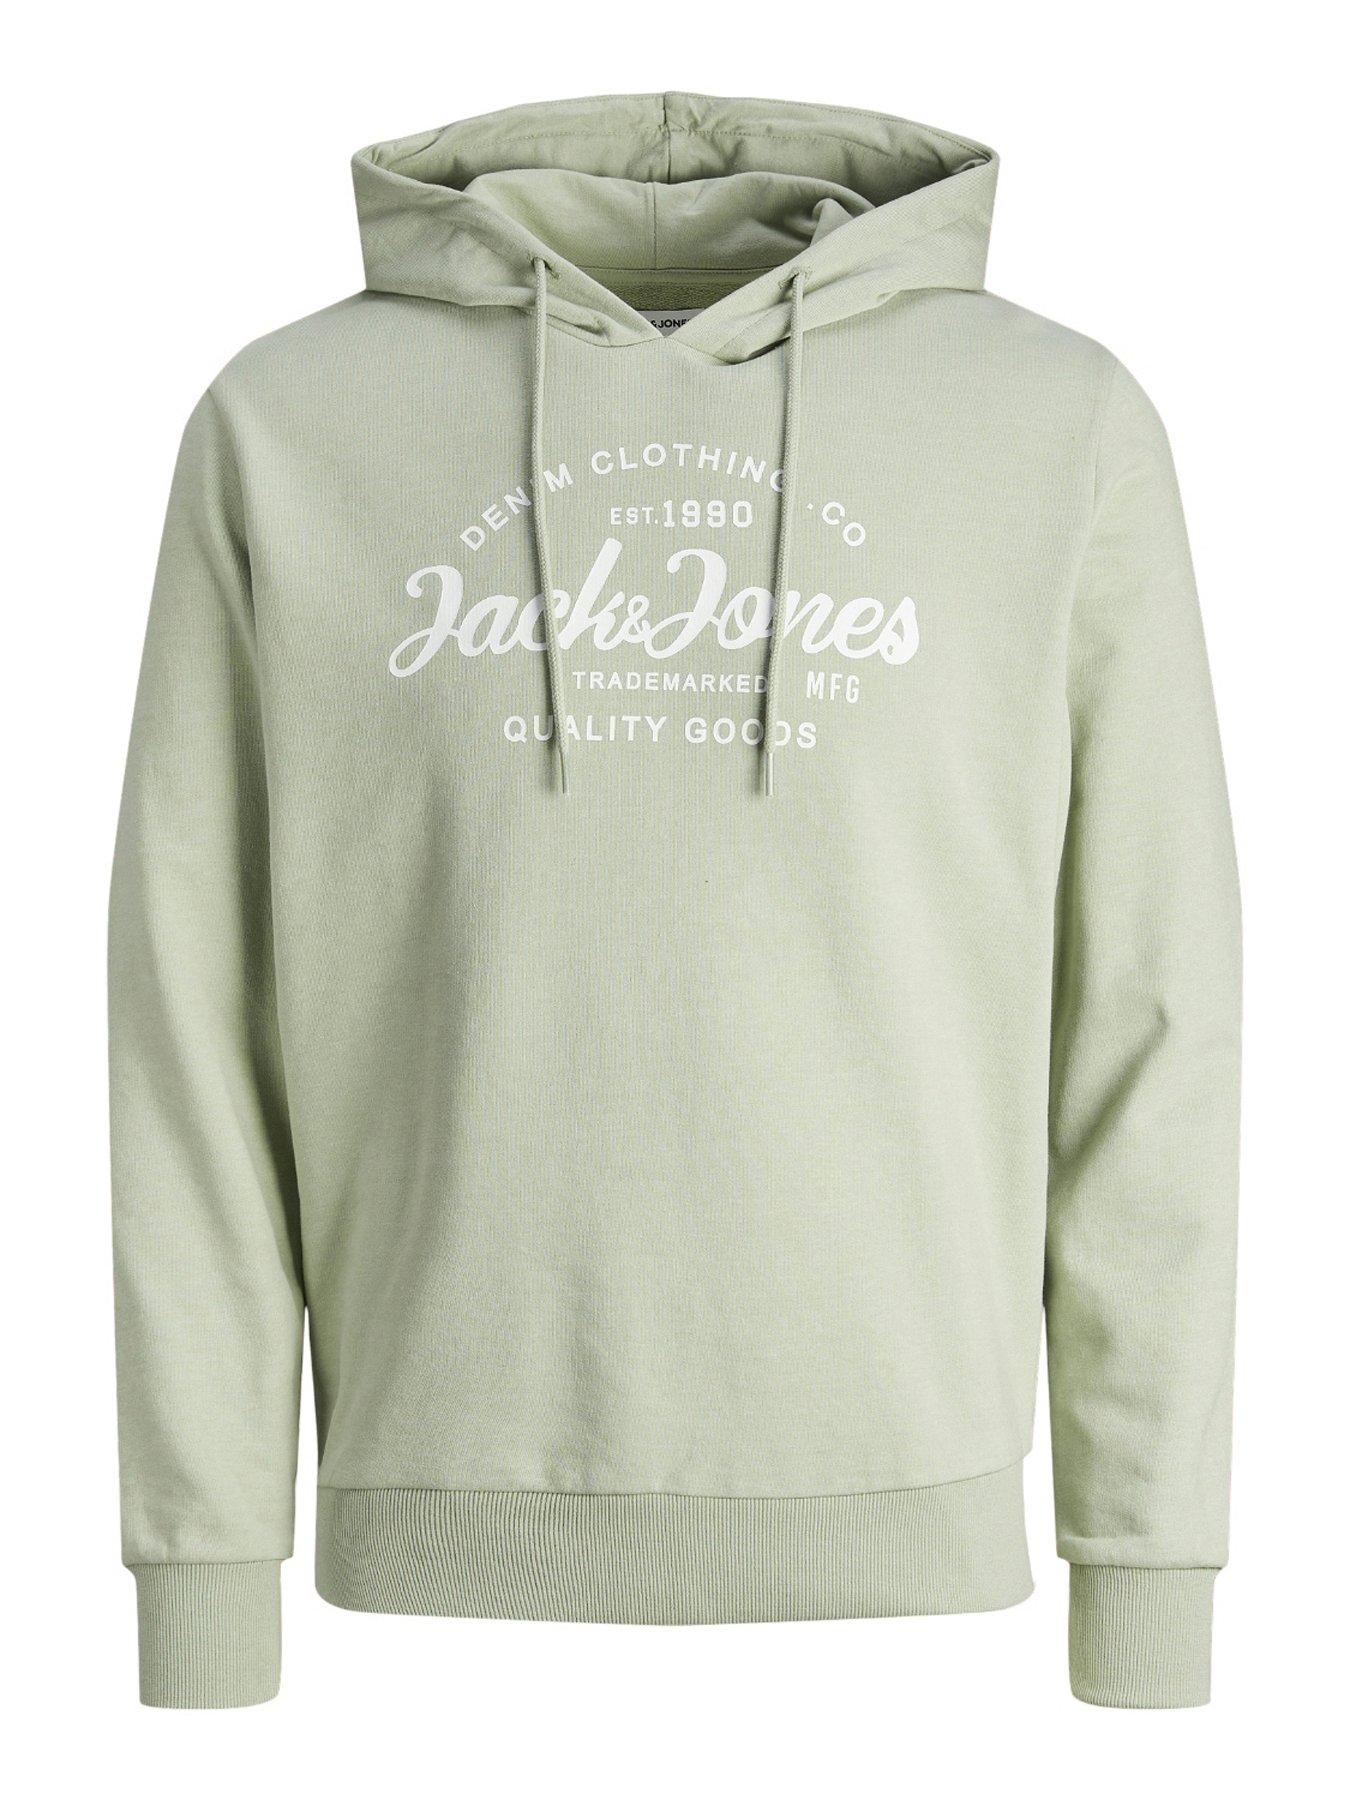 JACK & JONES Men's Sweatshirts, Men's clothing